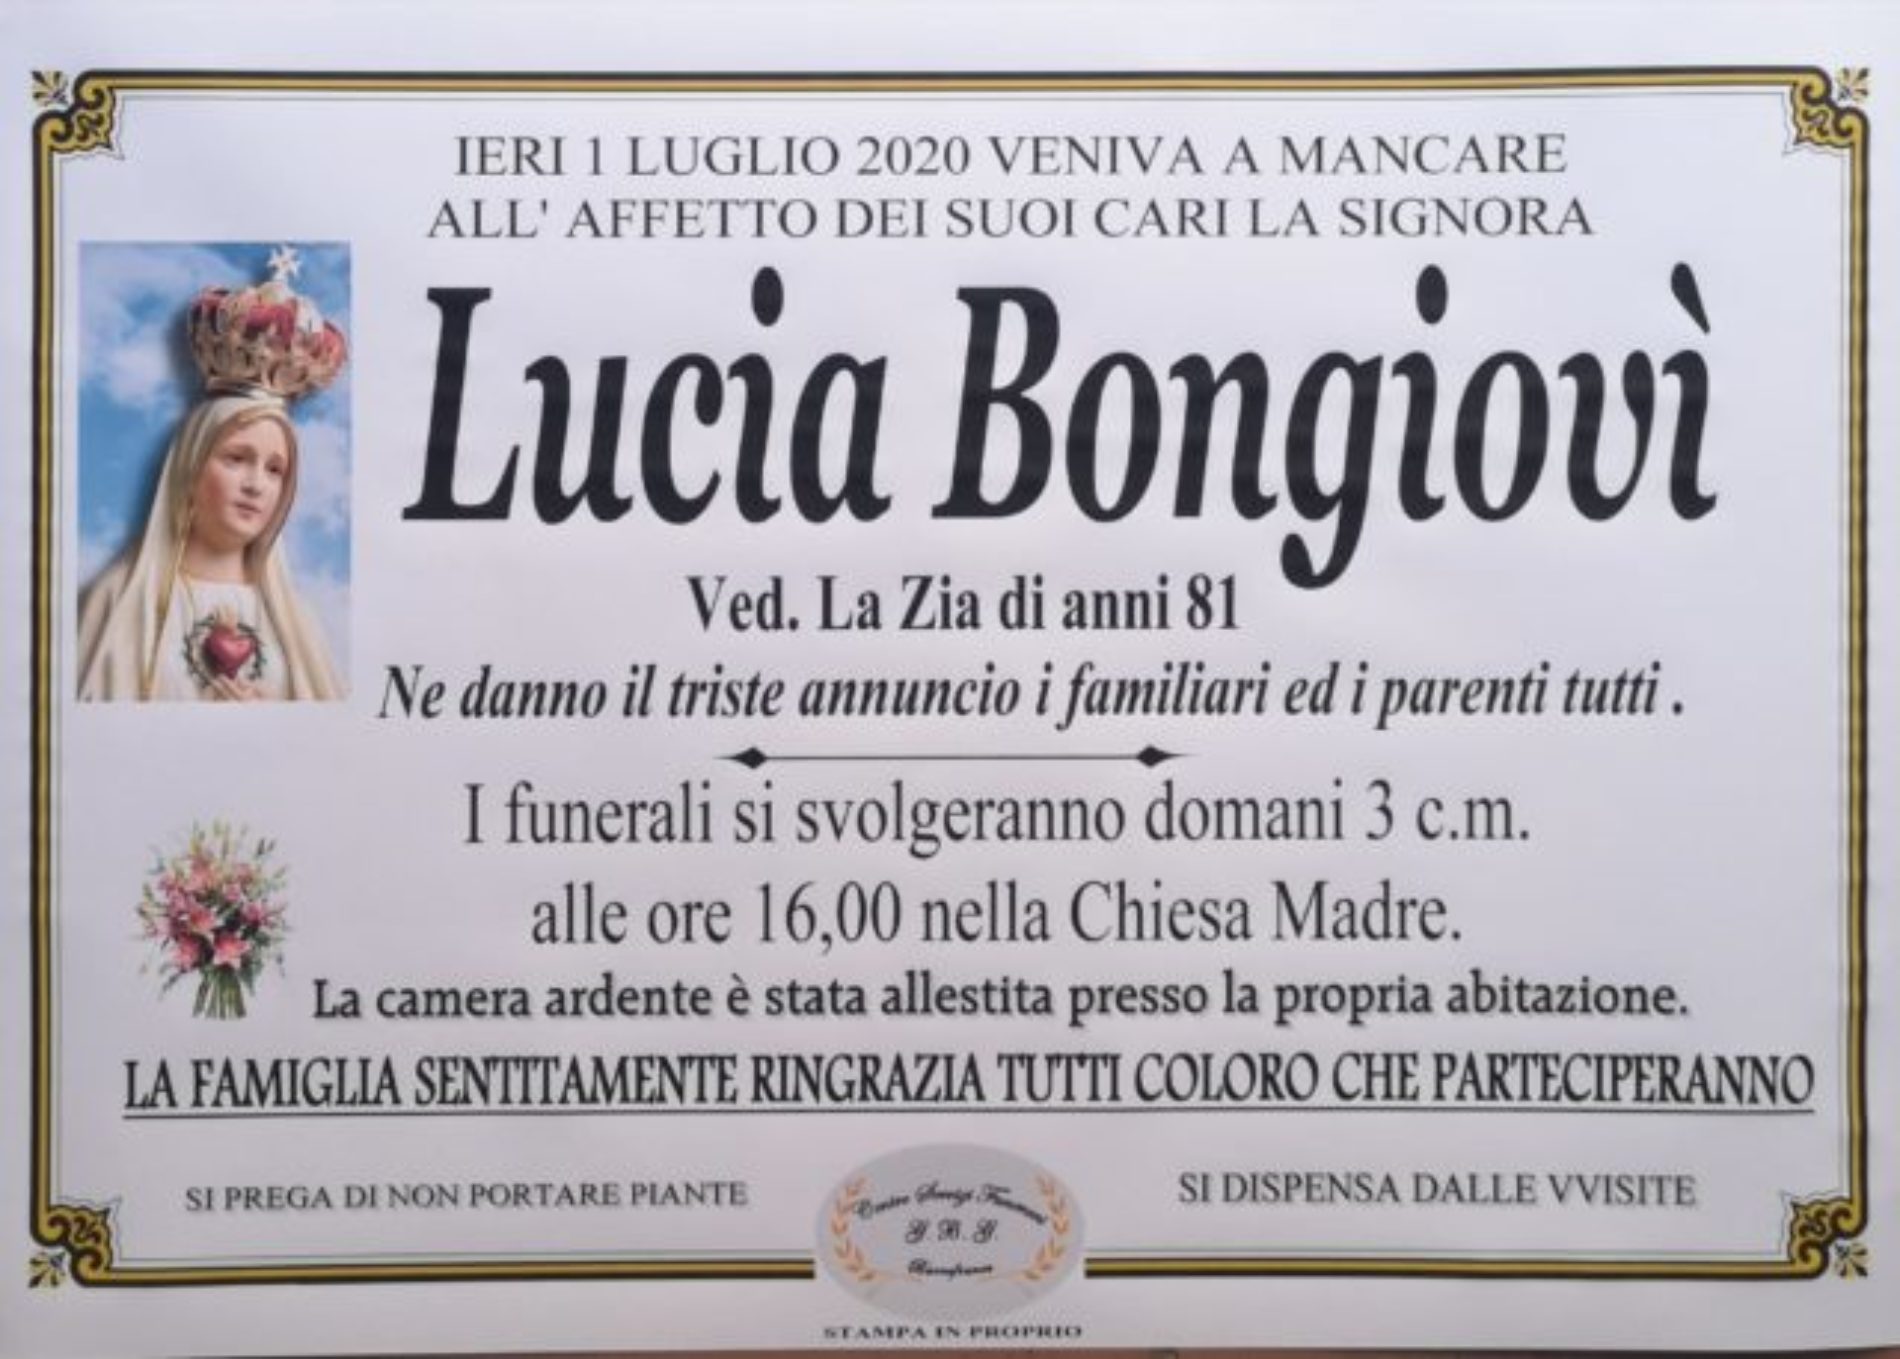 Annuncio Centro servizi funerari G.B.G. Lucia Bongiovì ved La Zia anni 81